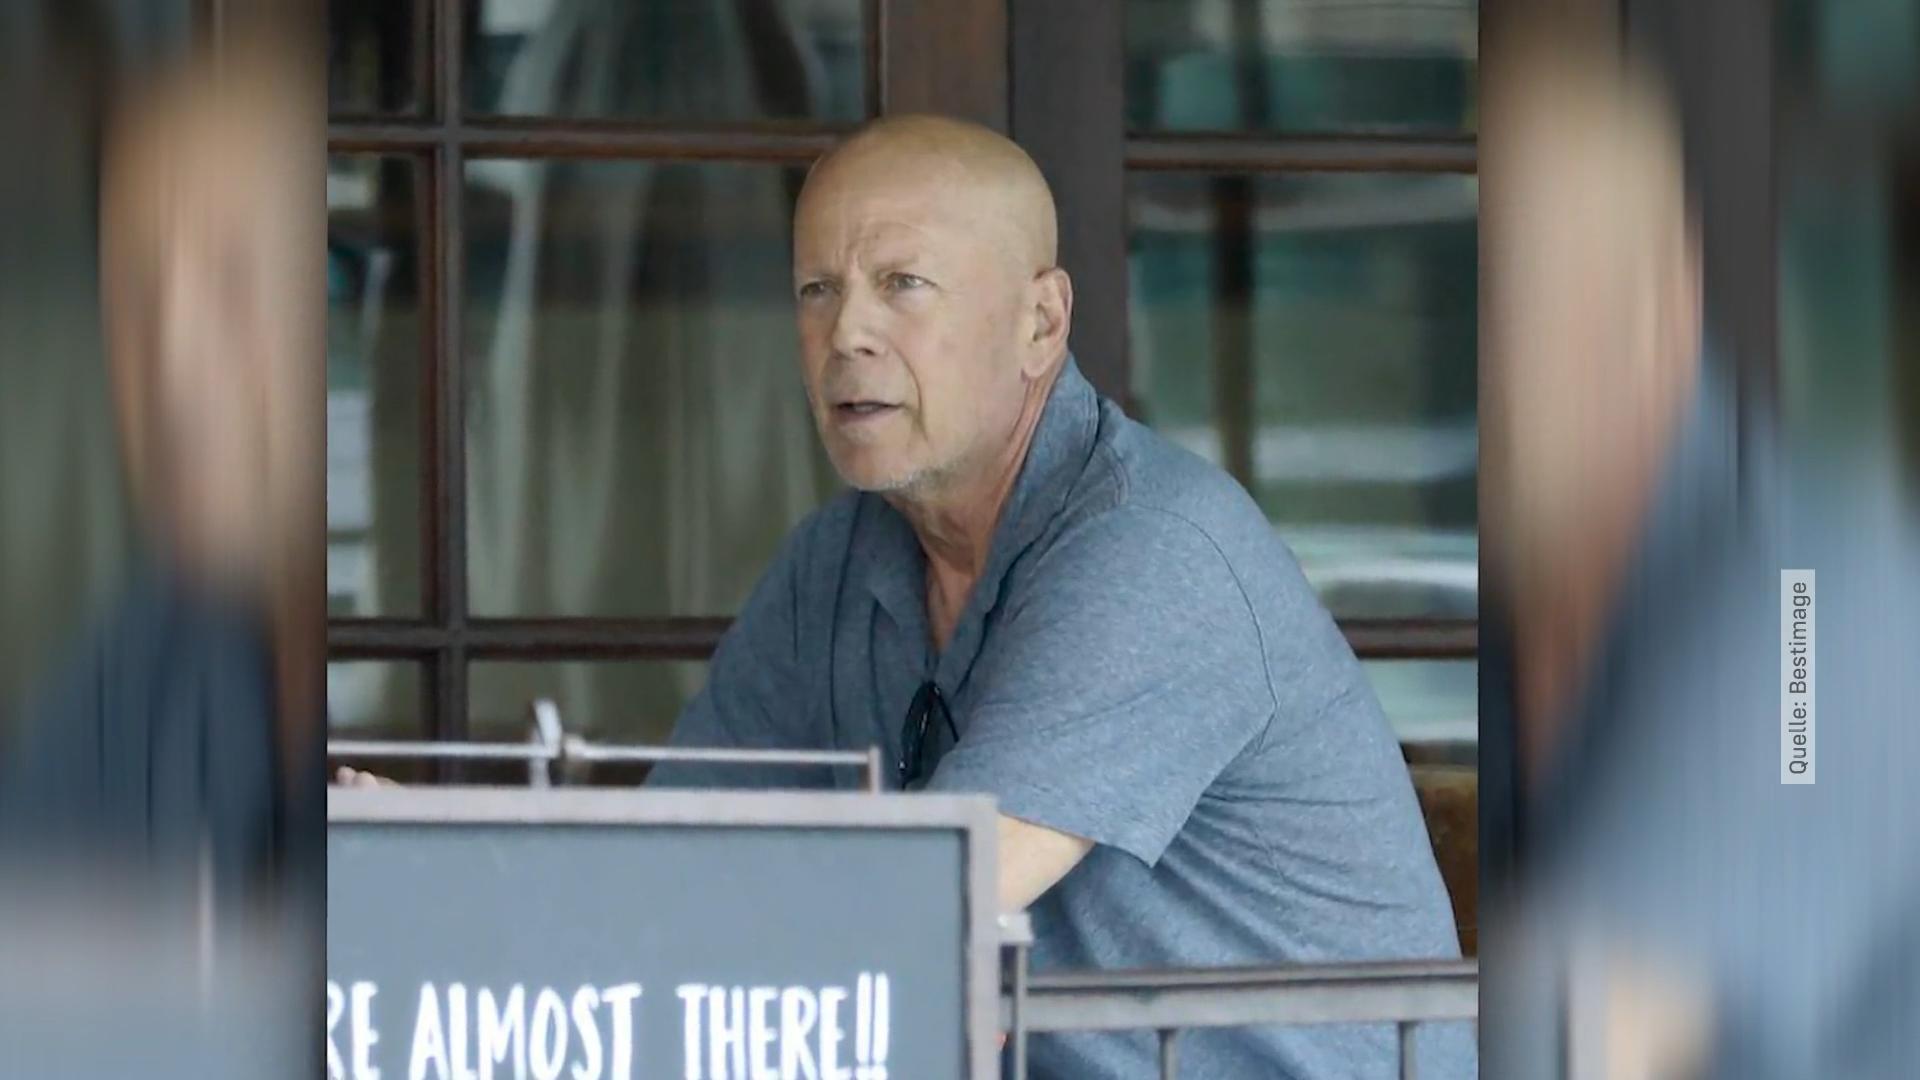 Bruce Willis zeigt sich wieder in der Öffentlichkeit Nach Aphasie-Diagnose